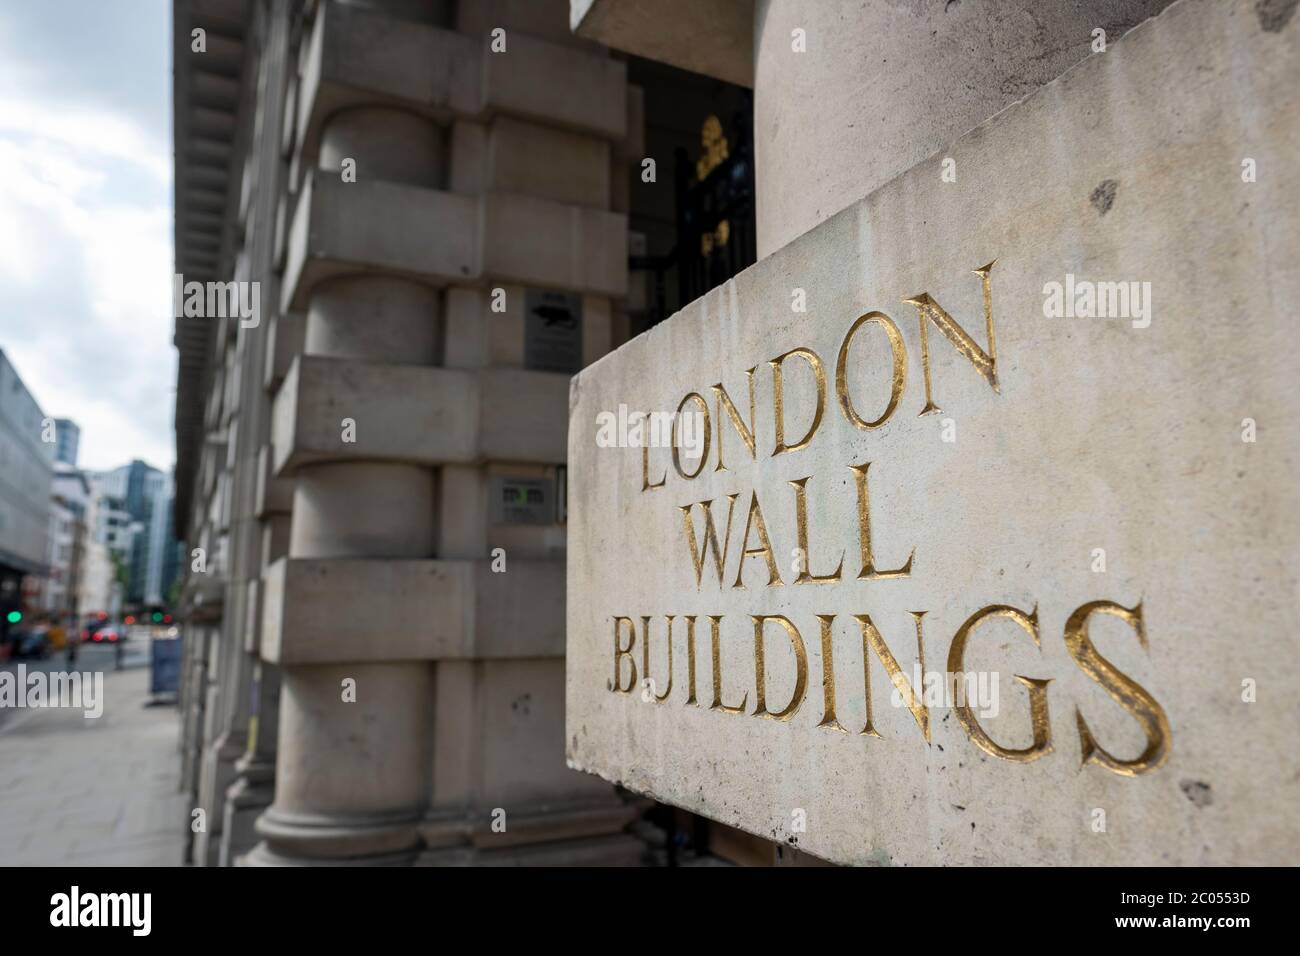 UK- London Wall Buildings on London Wall, une rue de la City de Londres Banque D'Images